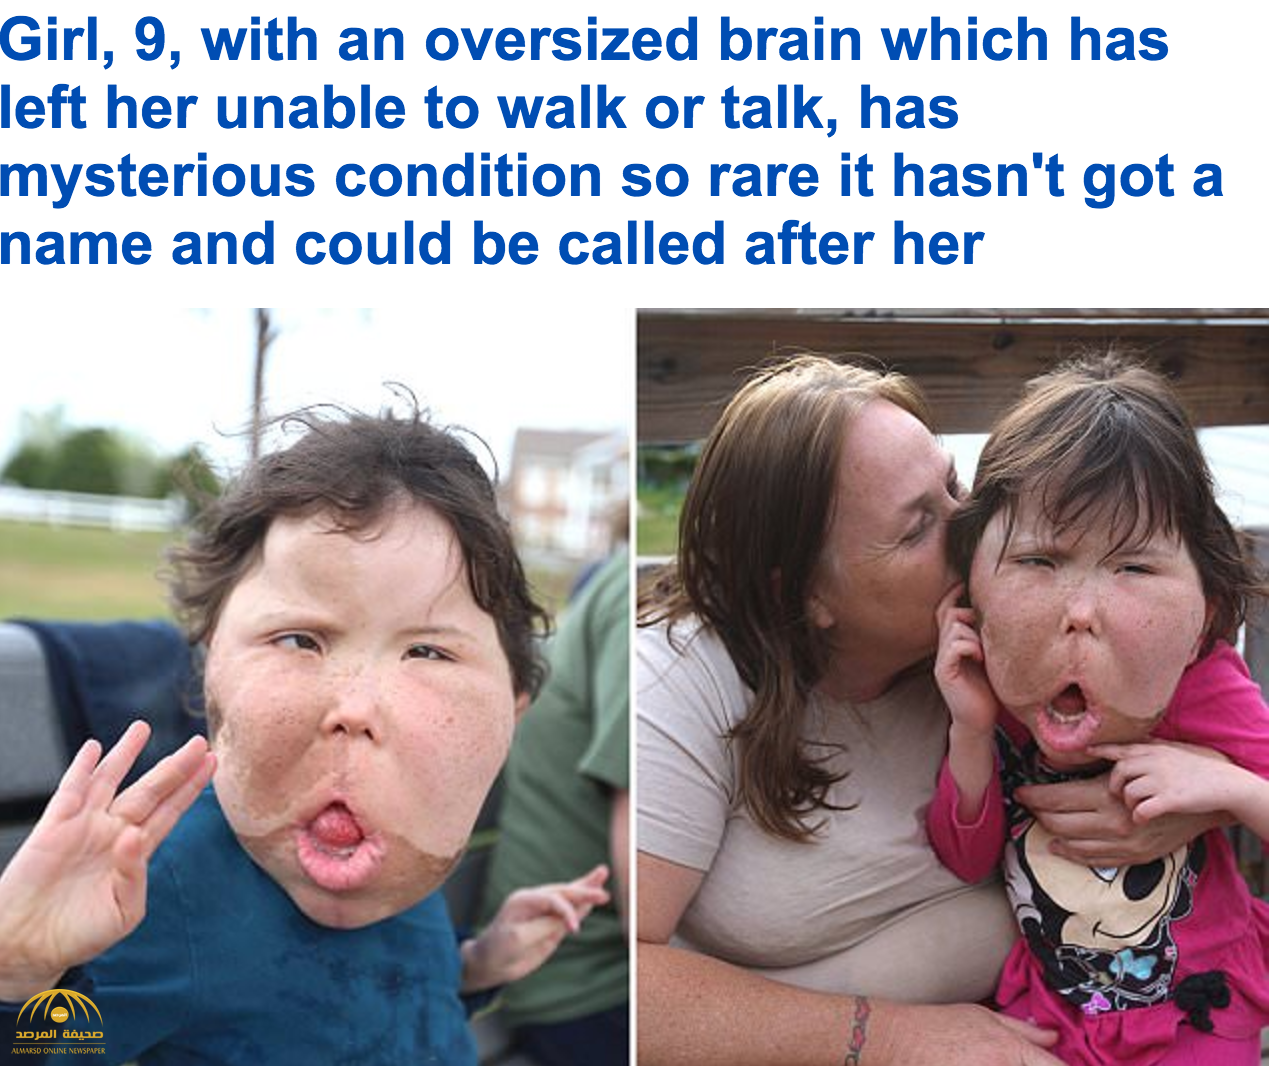 شاهد بالفيديو والصور: مأساة طفلة تعاني من أغرب حالة "تضخم دماغ" في العالم!